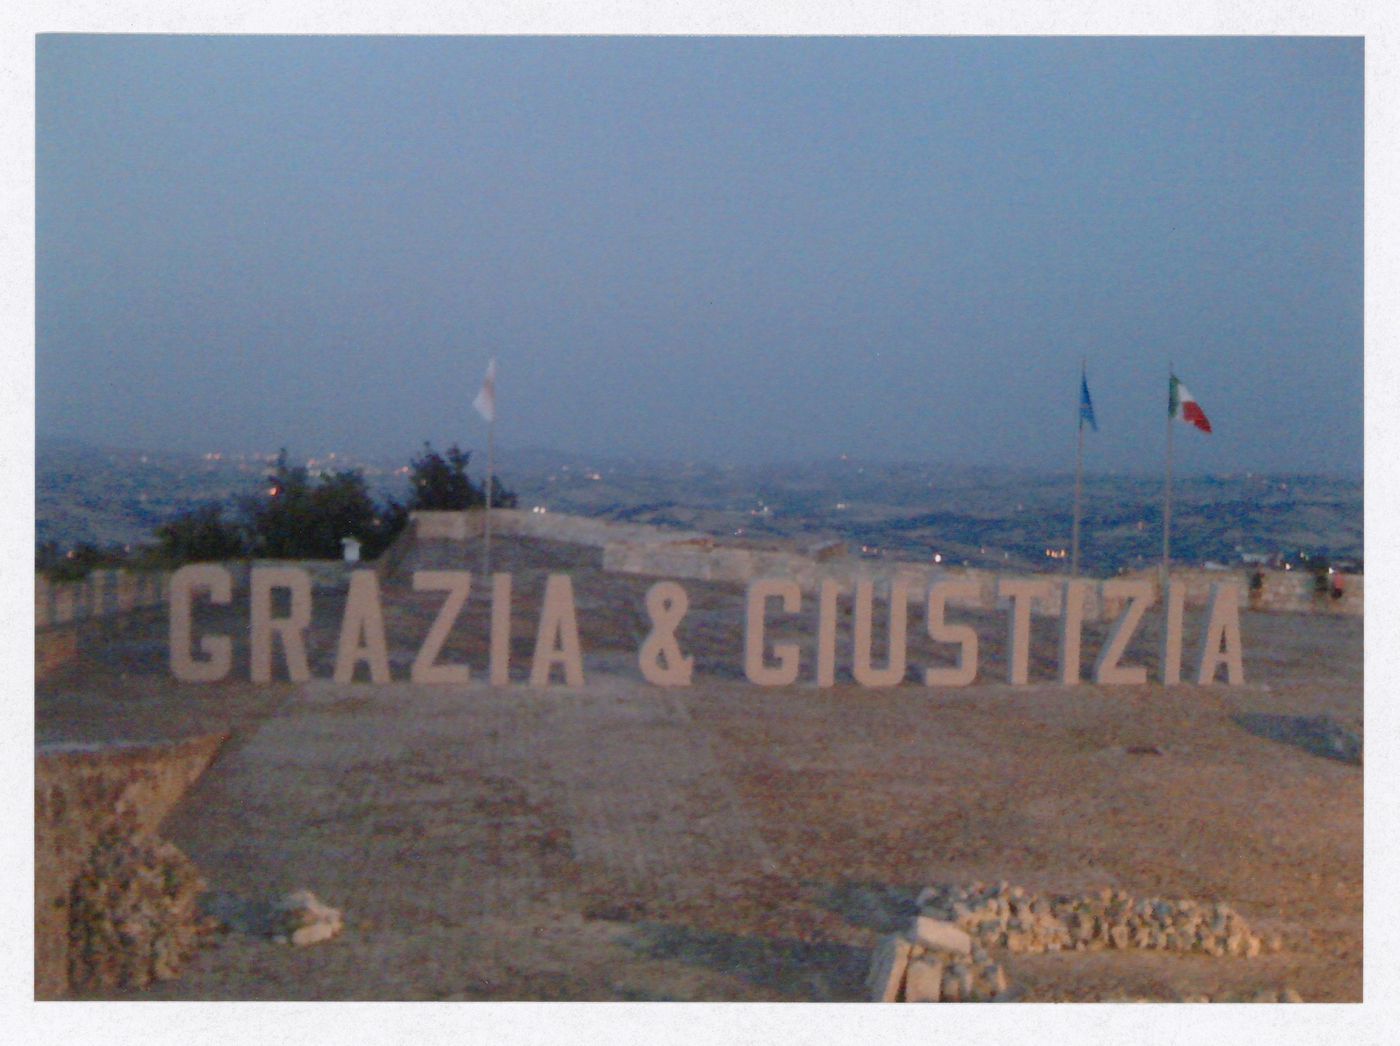 Photograph of the installation for Grazia & Giustizia